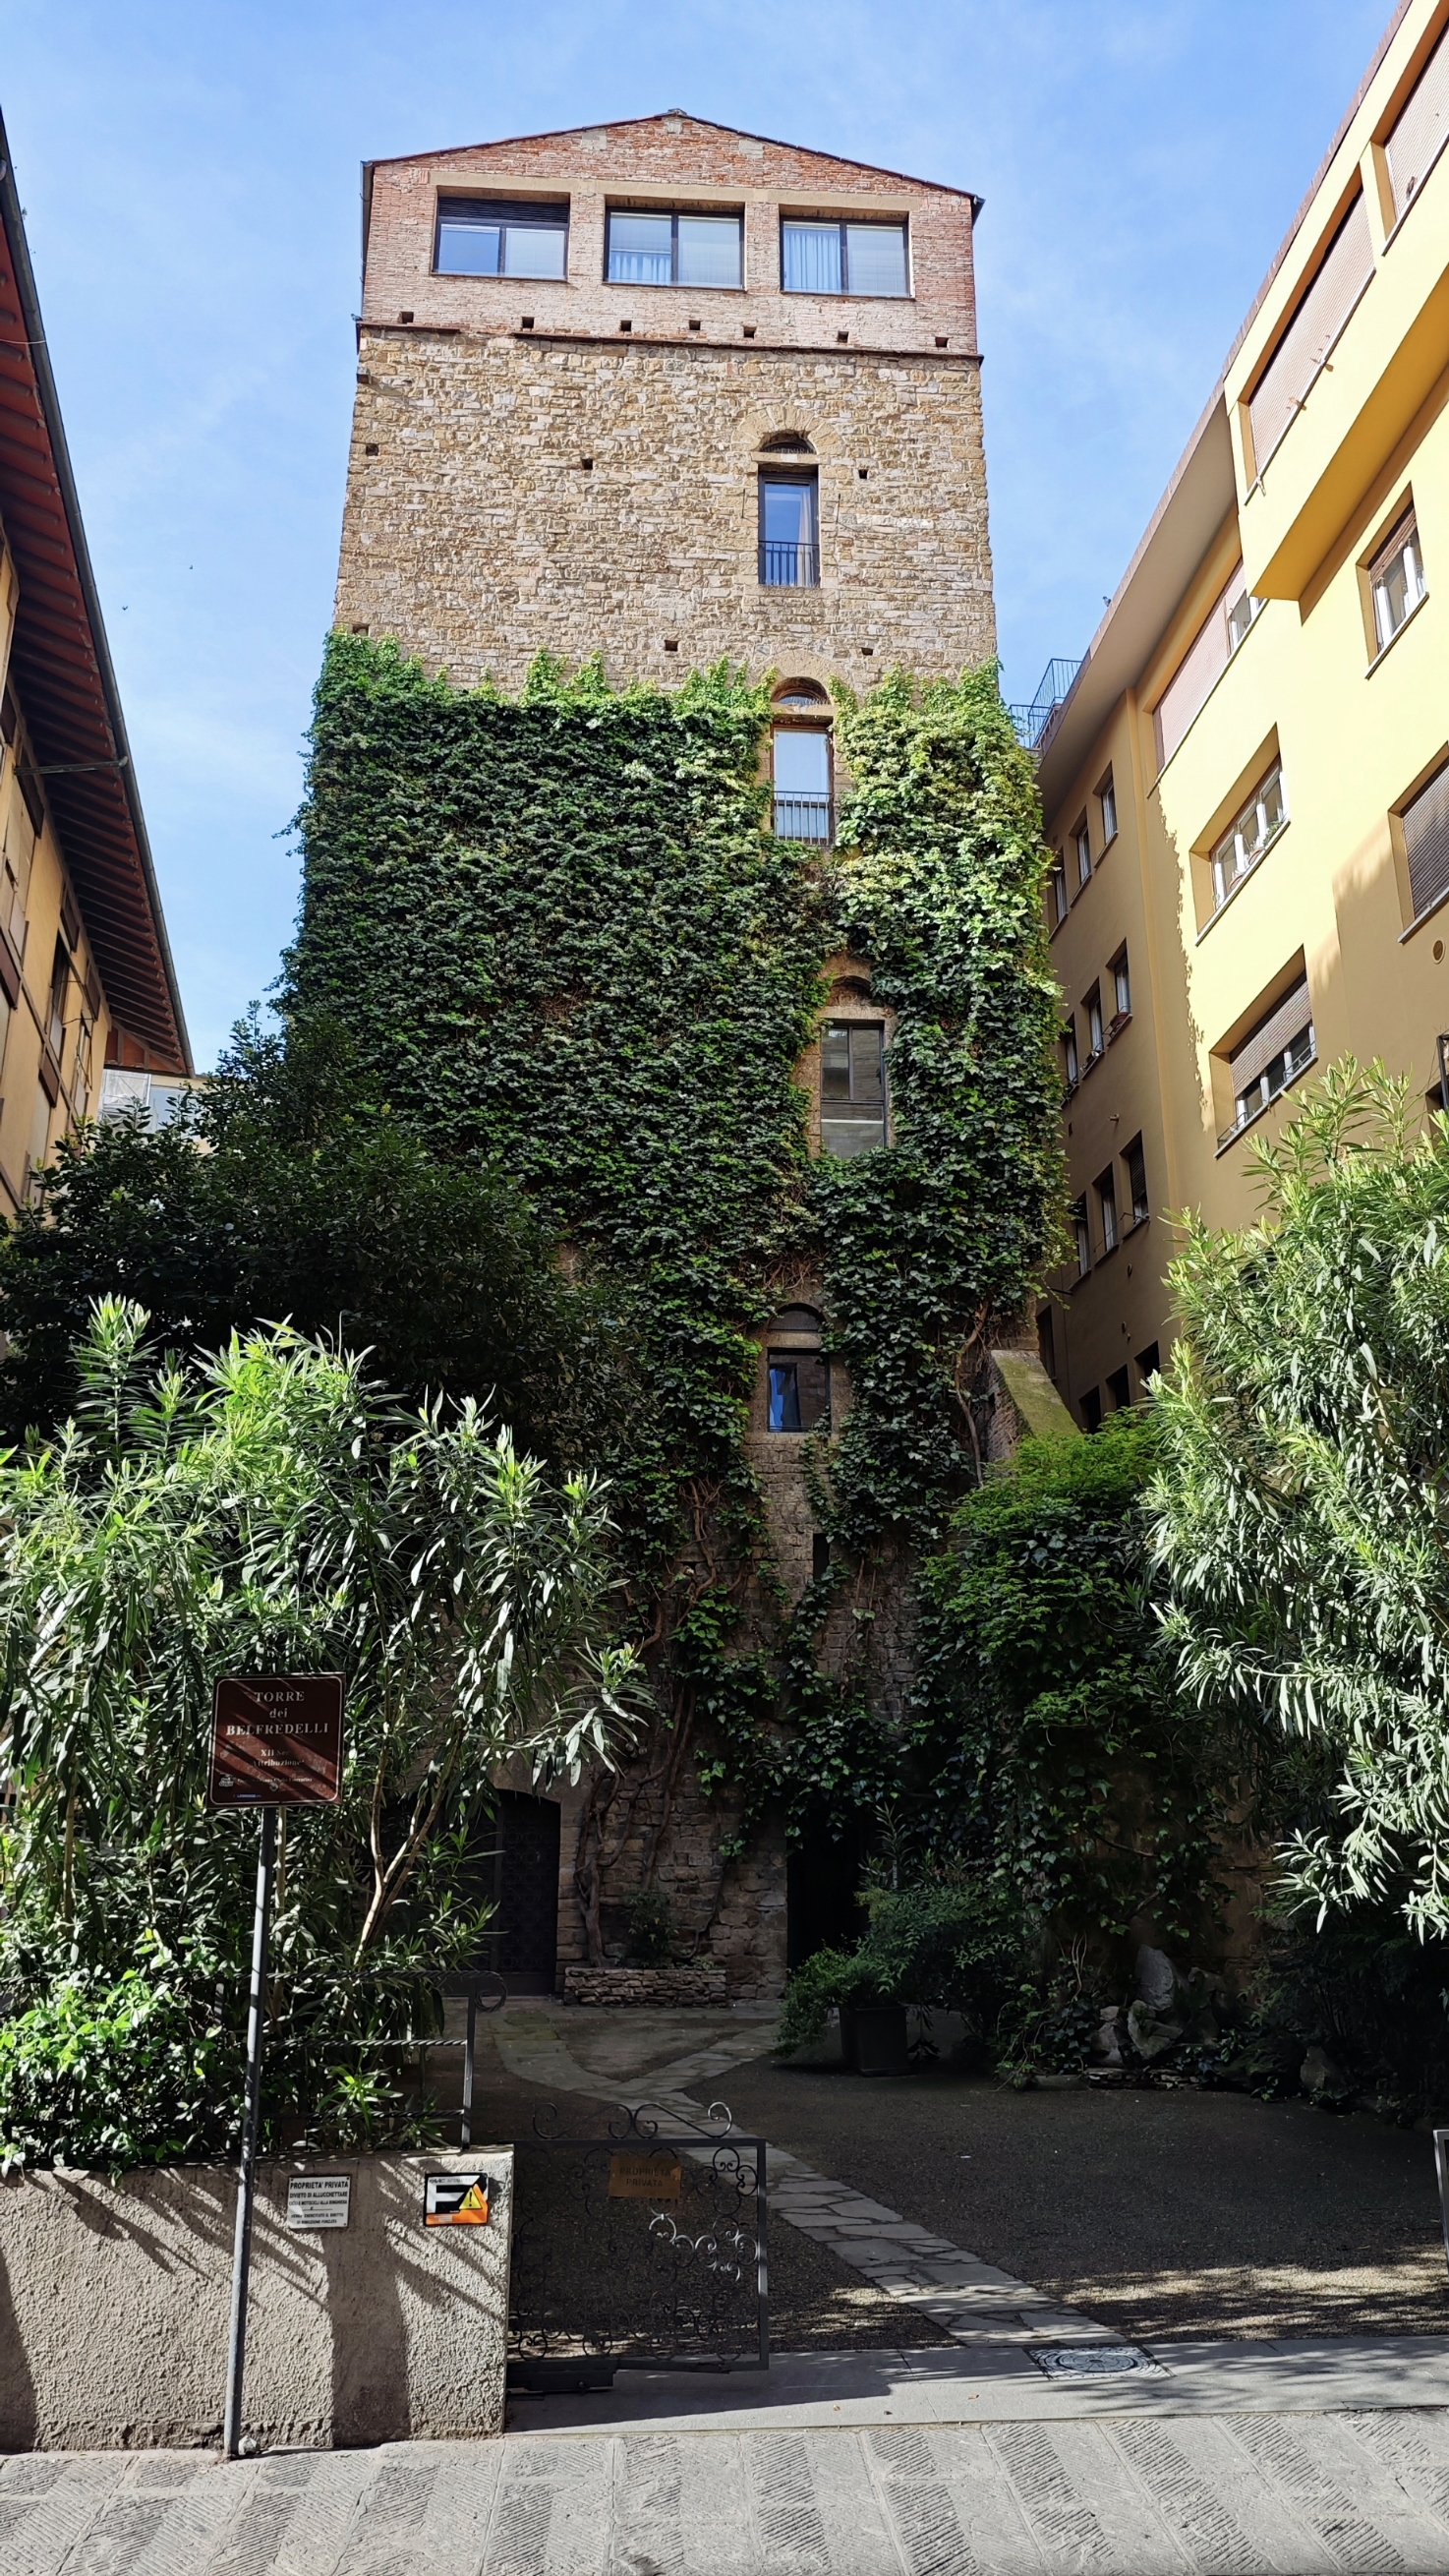 Напротив отеля находится самая высокая средневековая башня Torre dei Belfredelli sec. XII, увитая зеленью, с частным садиком, в который нет доступа